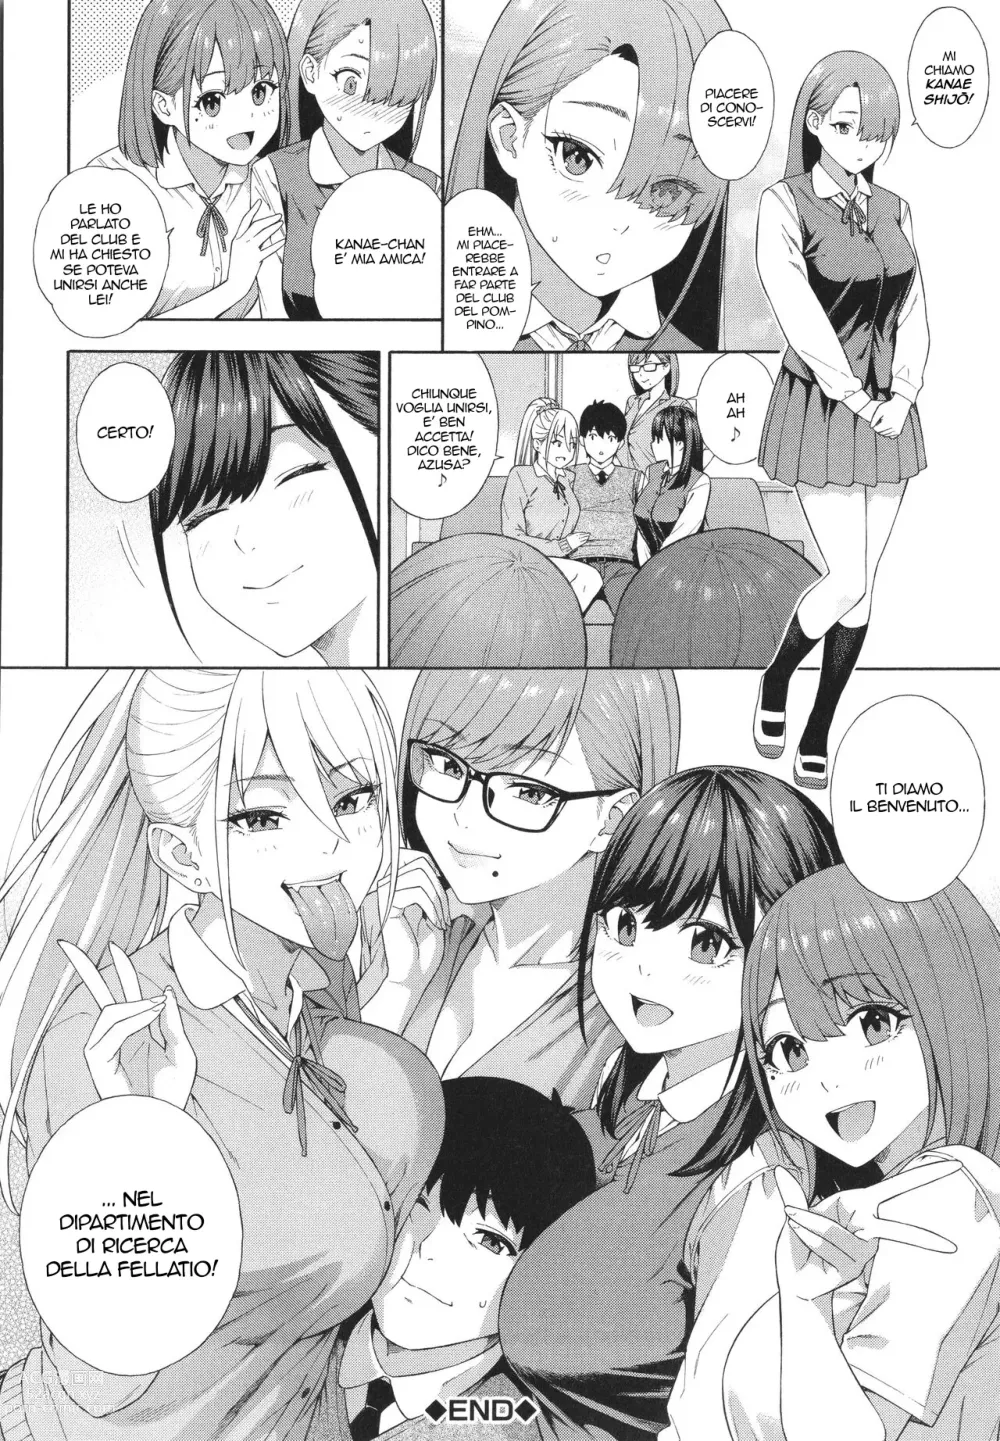 Page 212 of manga Il Dipartimento di Ricerca della Fellatio